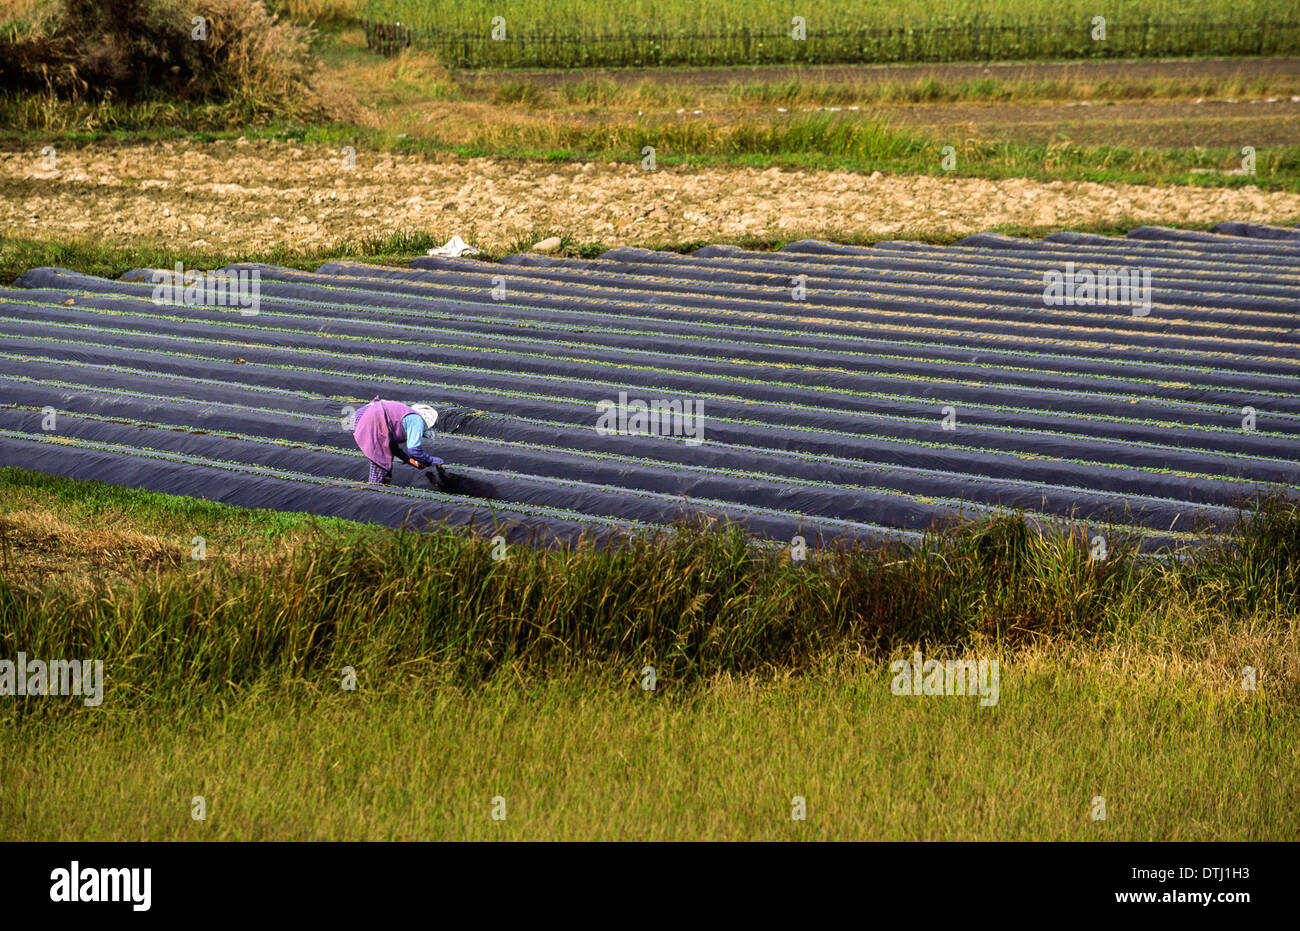 La horticultura en Japón el cultivo en hileras protegidos por láminas de polietileno Foto de stock